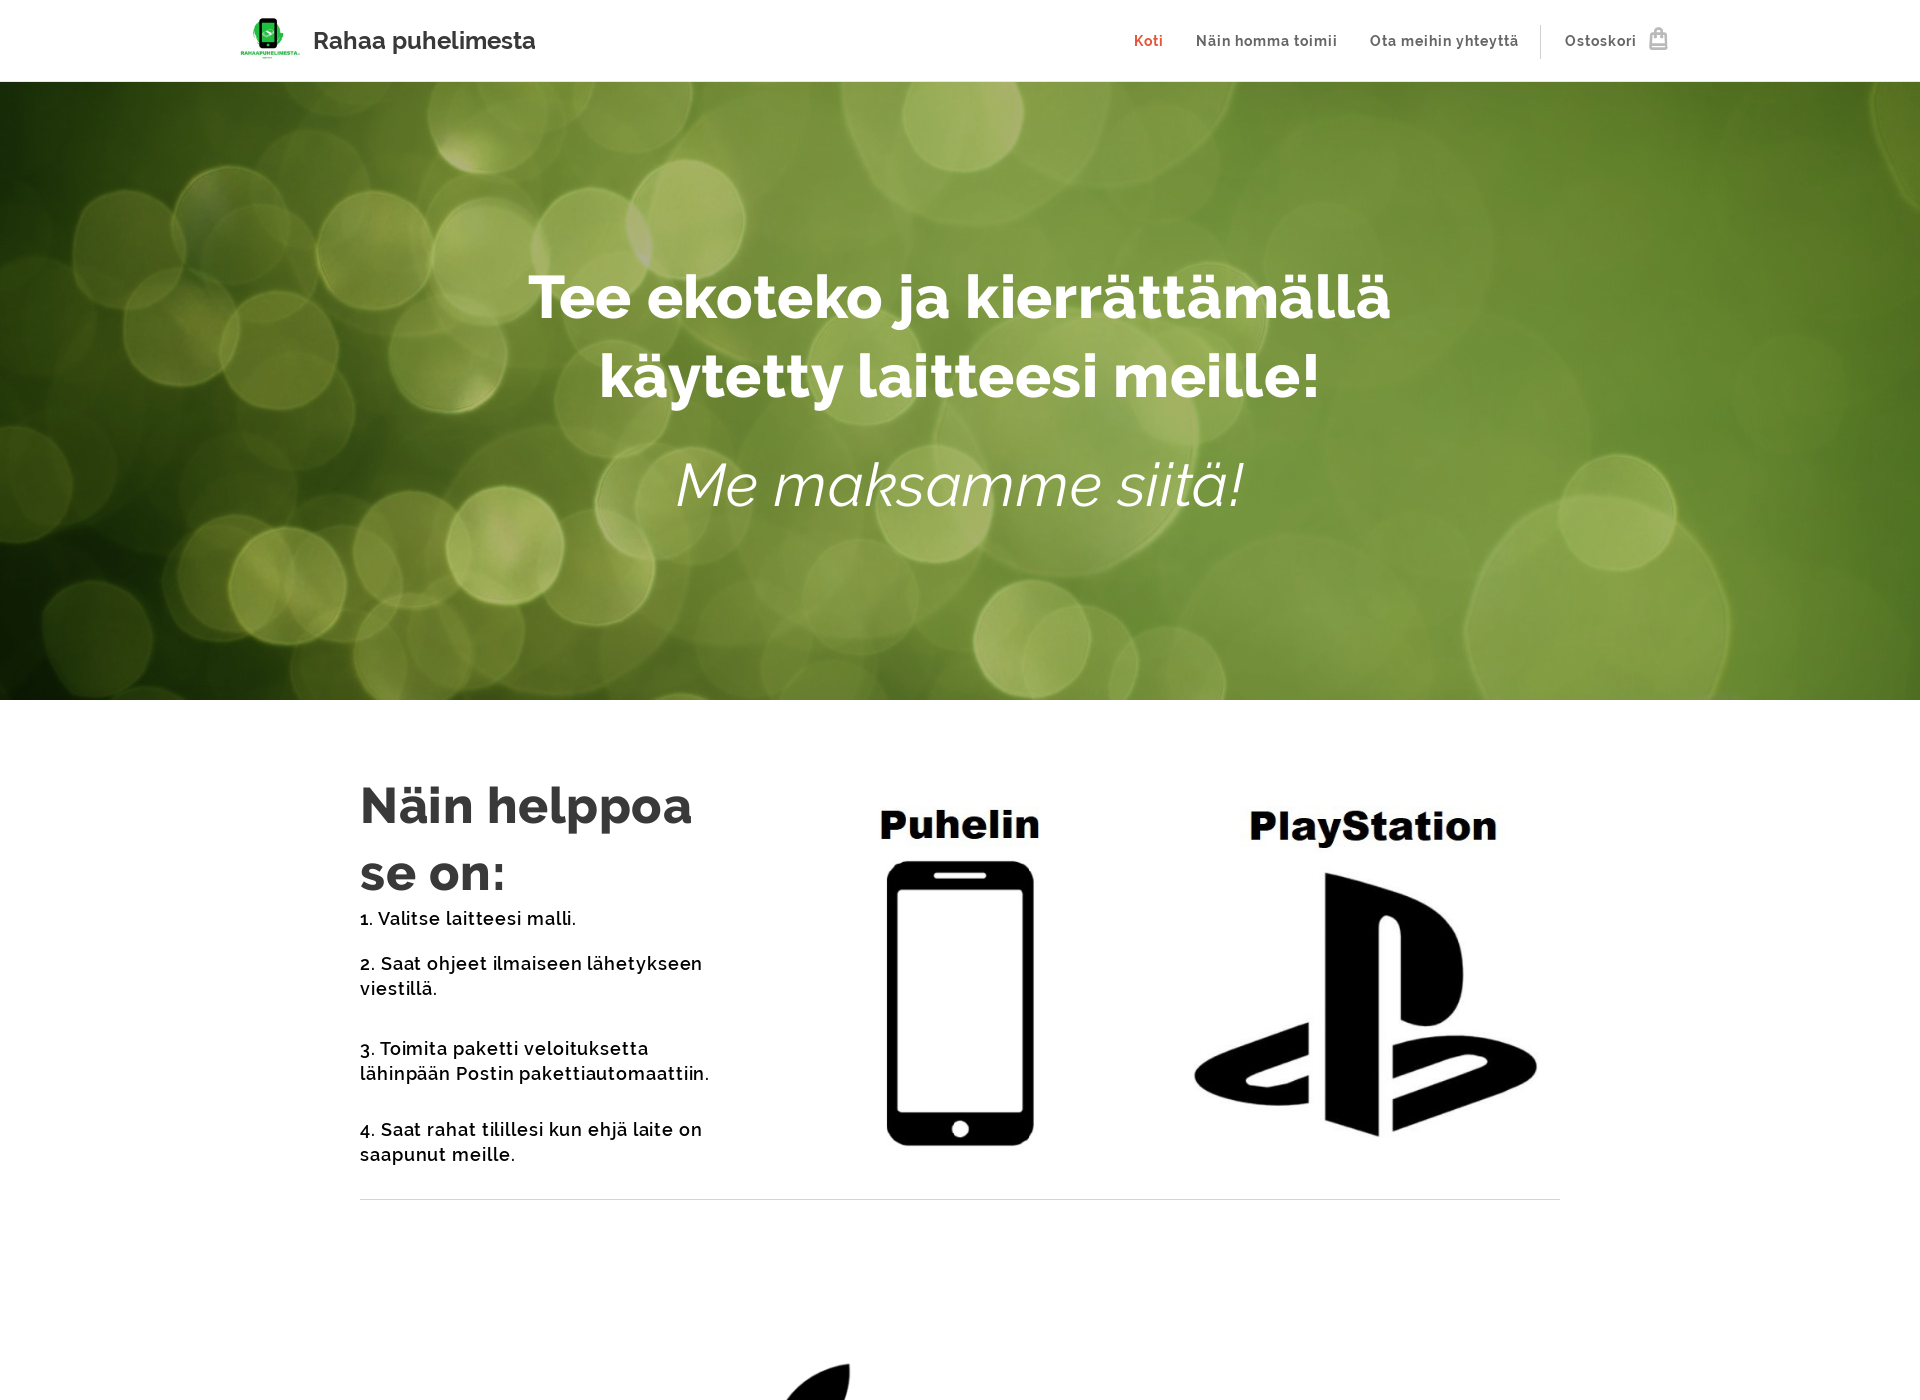 Näyttökuva rahaapuhelimesta.fi